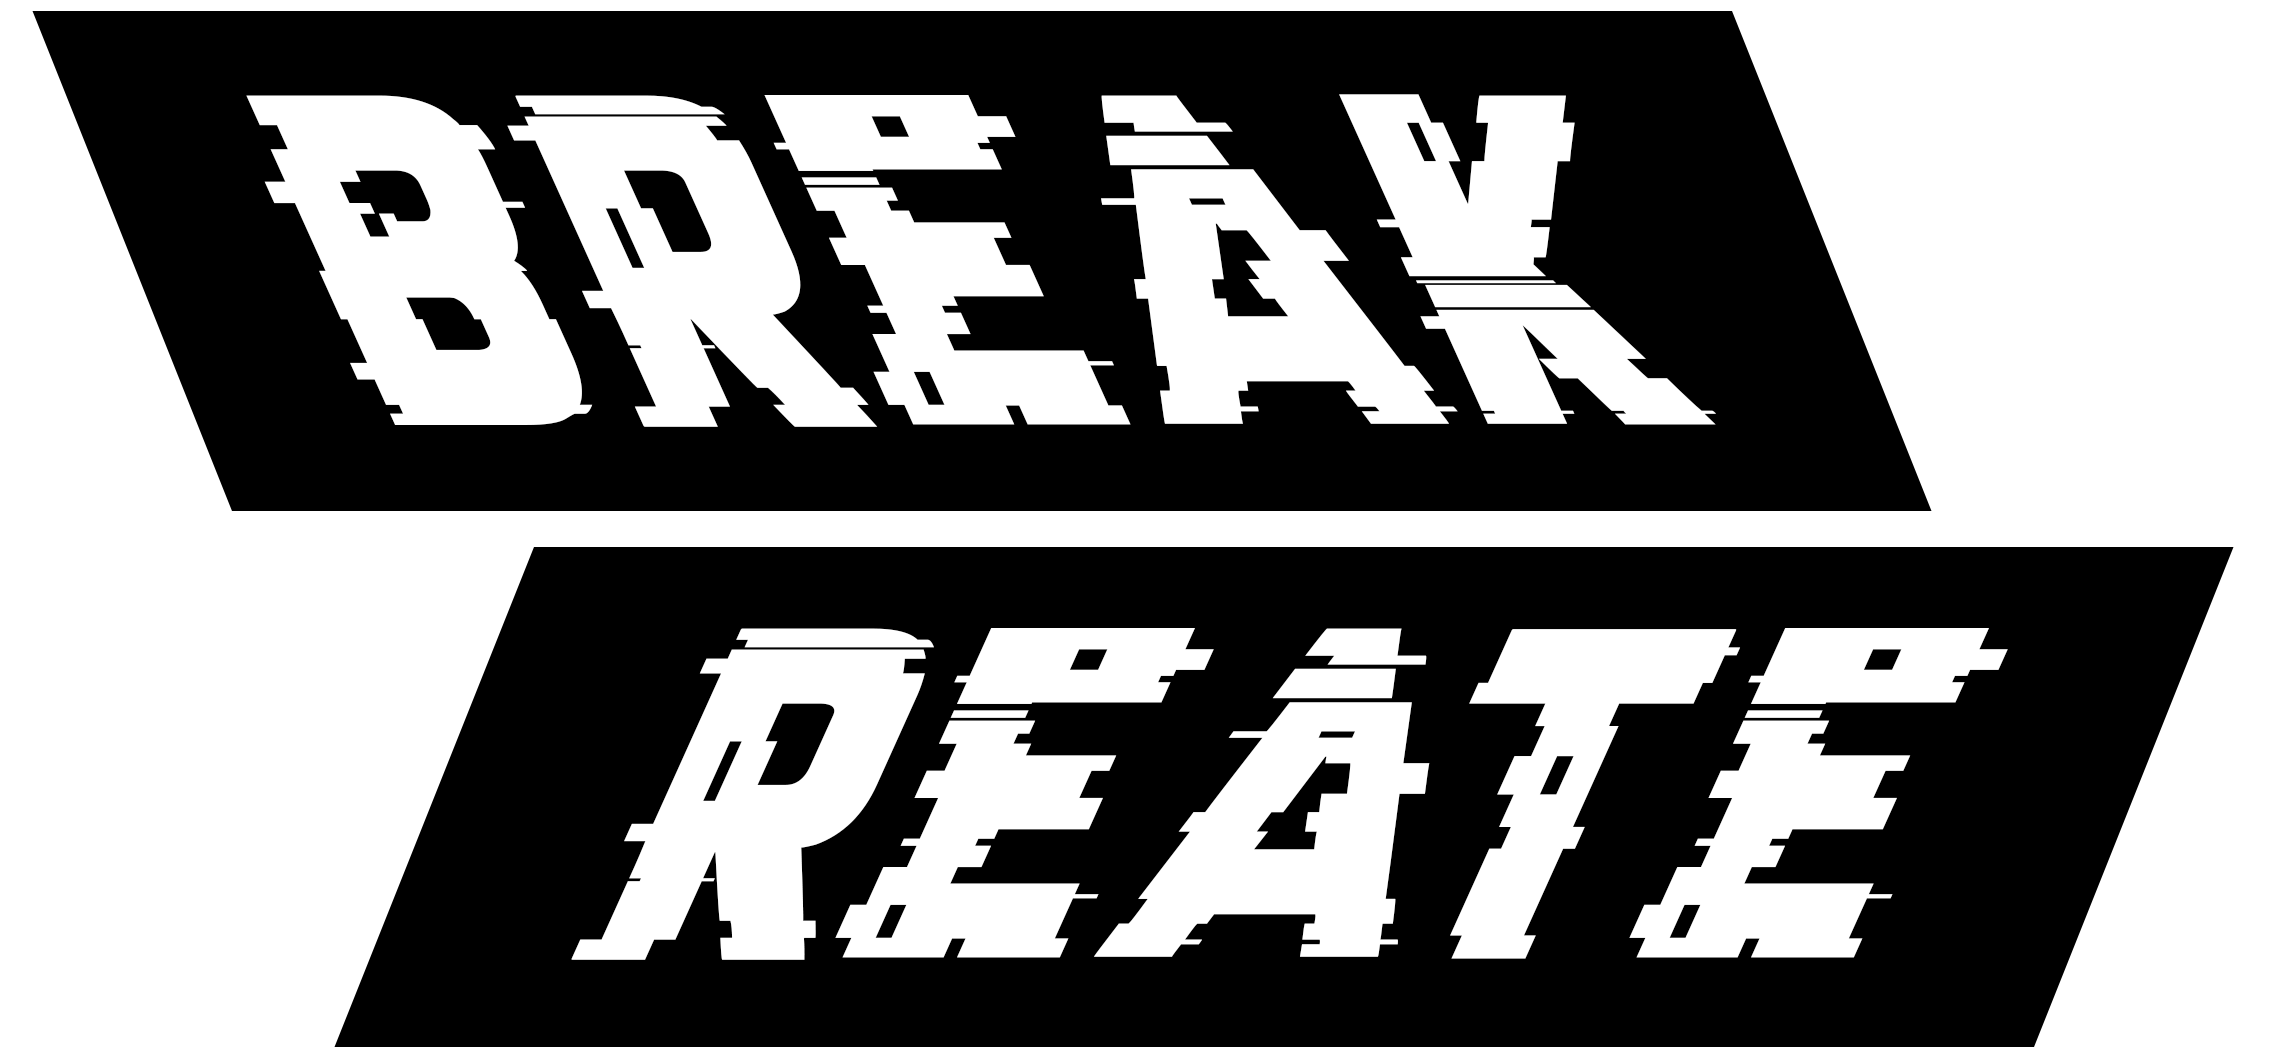 Breakreate